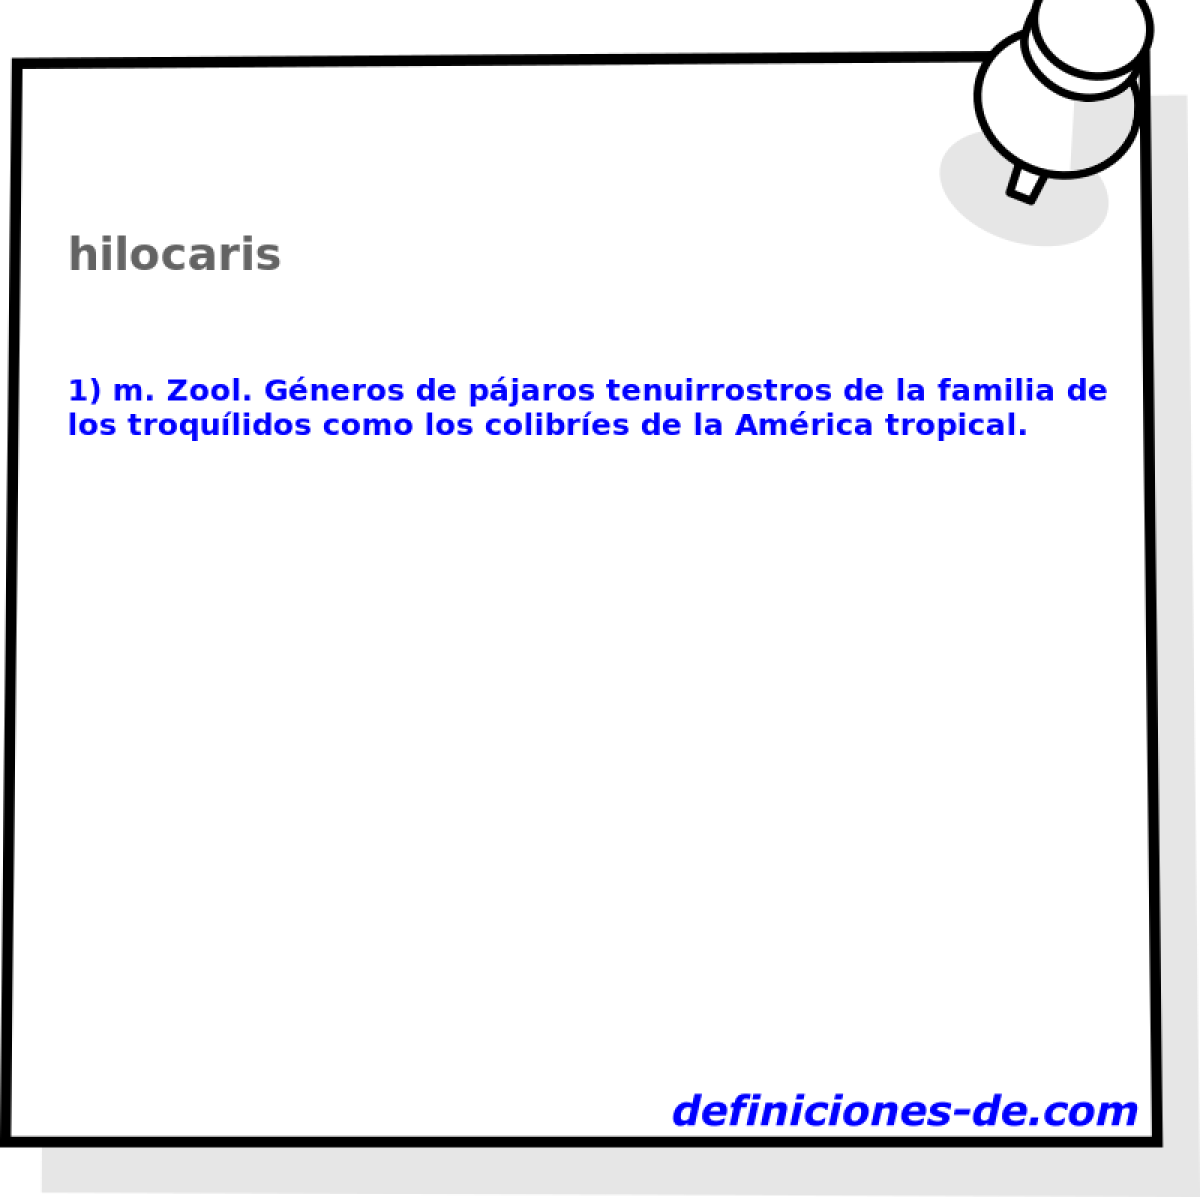 hilocaris 